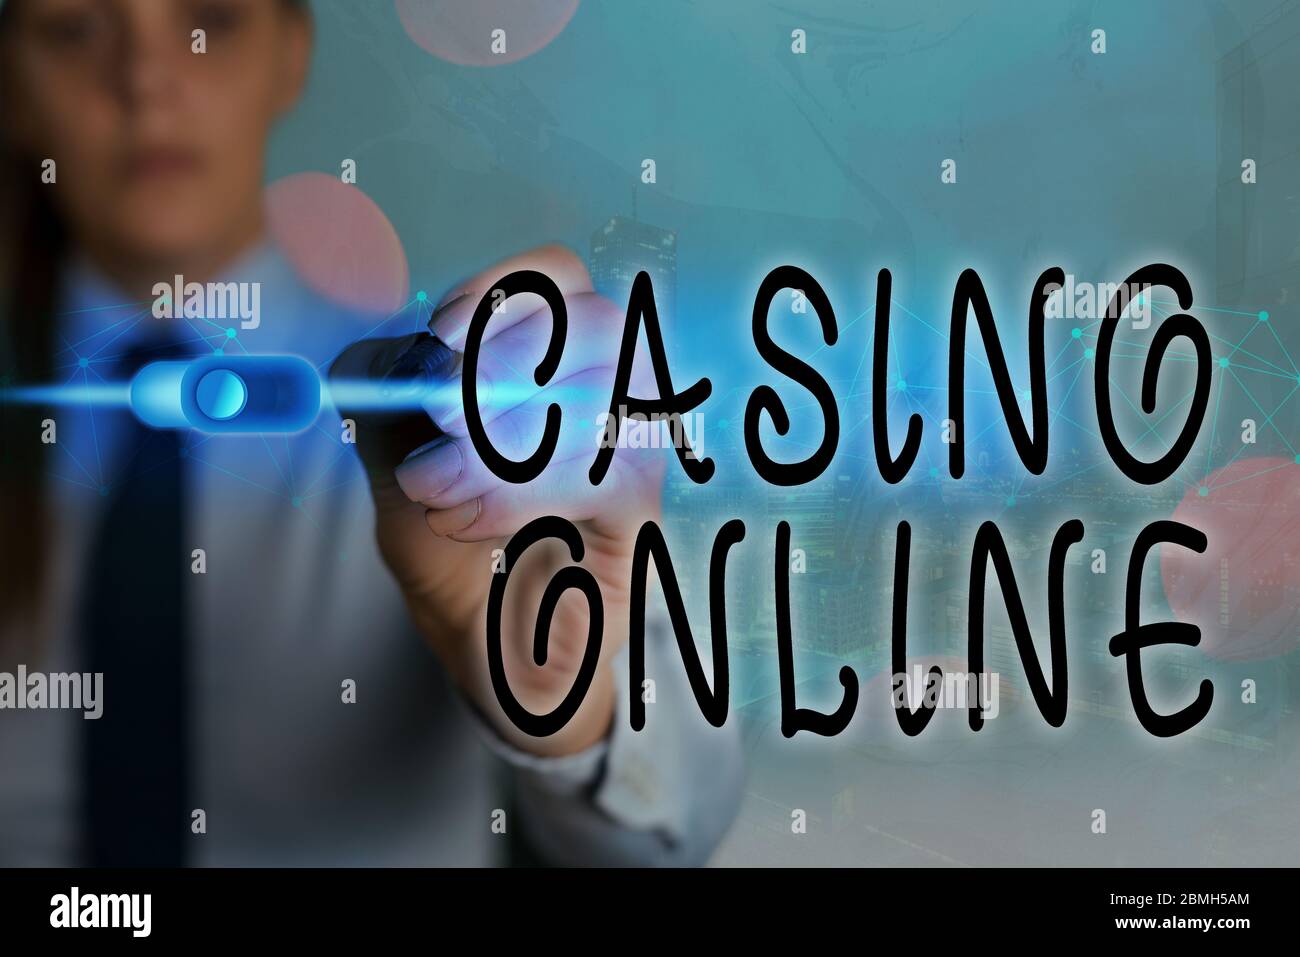 Top 10 des clips YouTube sur playzee casino français